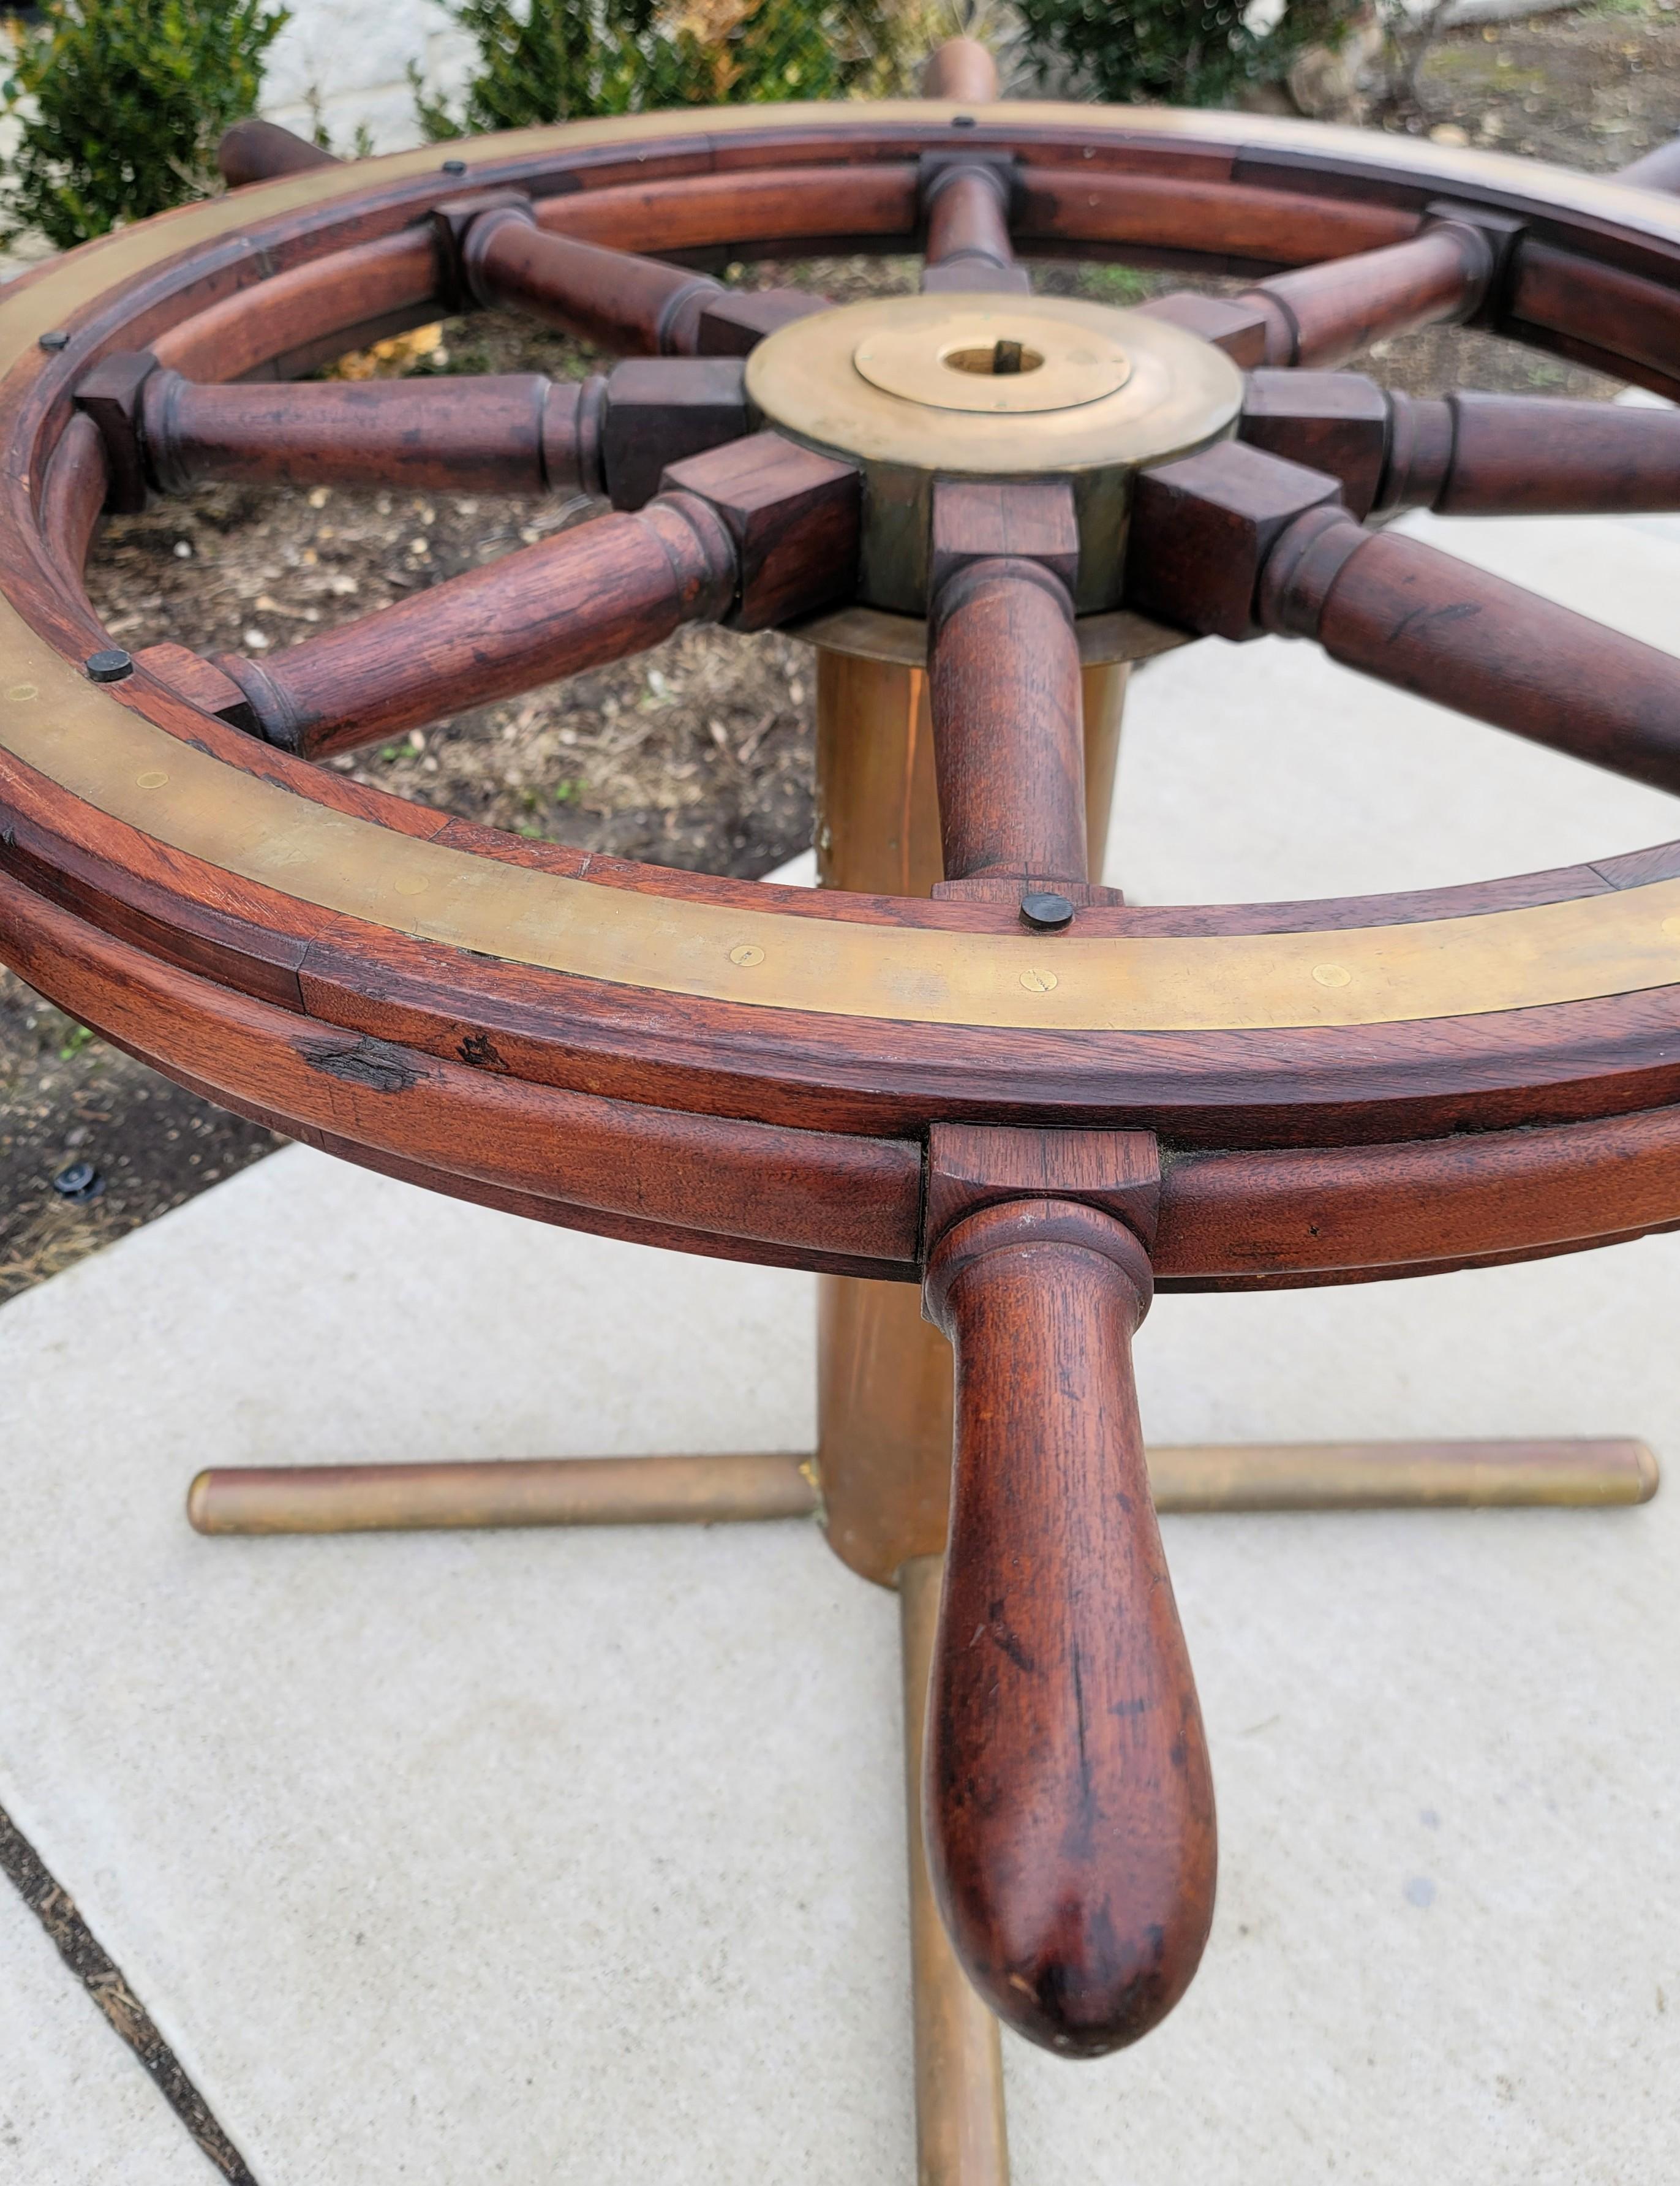 Antique Italian Ships Wheel Table, Helm From Giuseppe Verdi 1